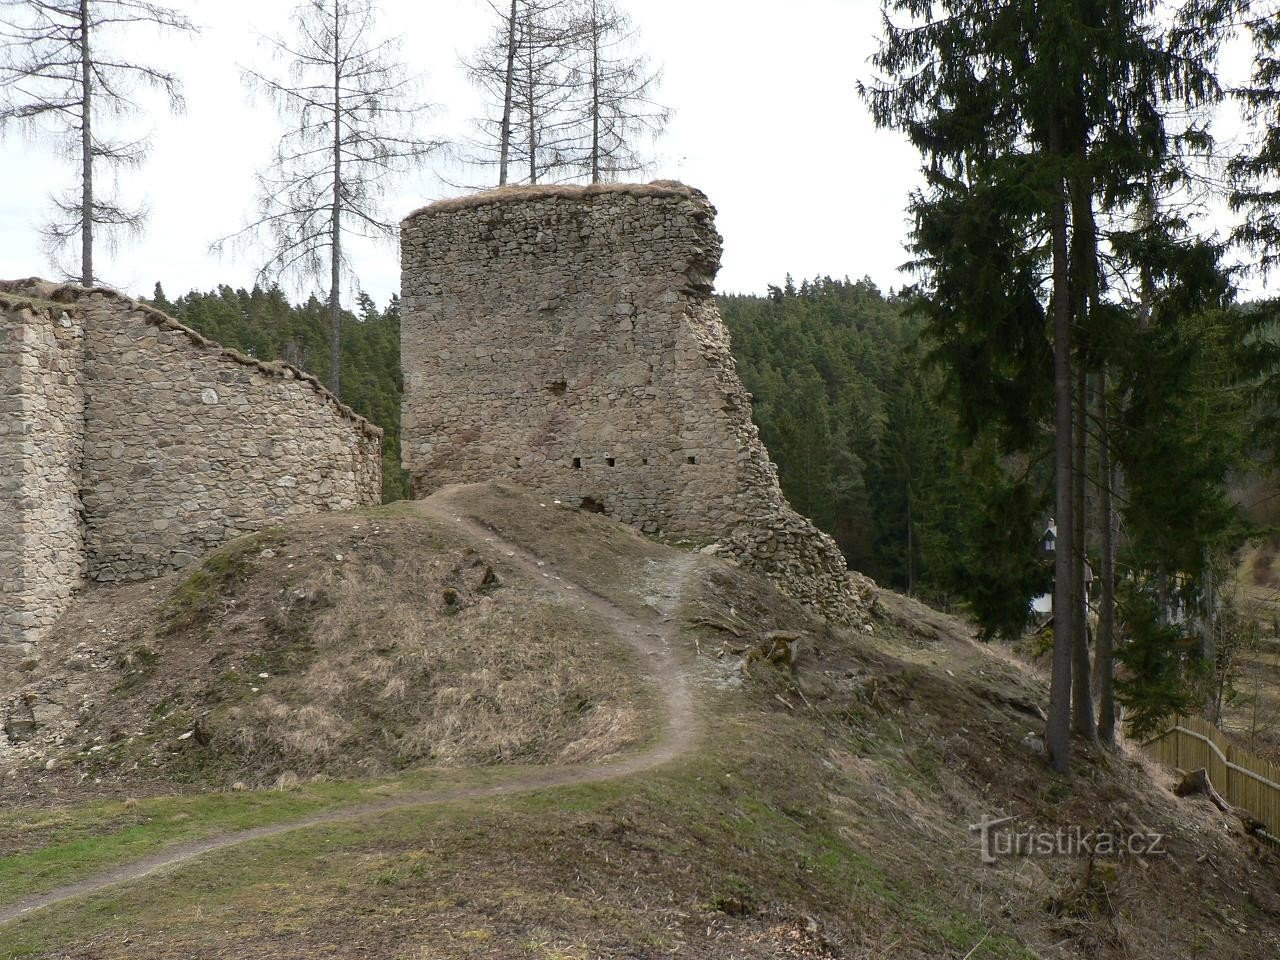 Porešín, cung điện từ phía bắc